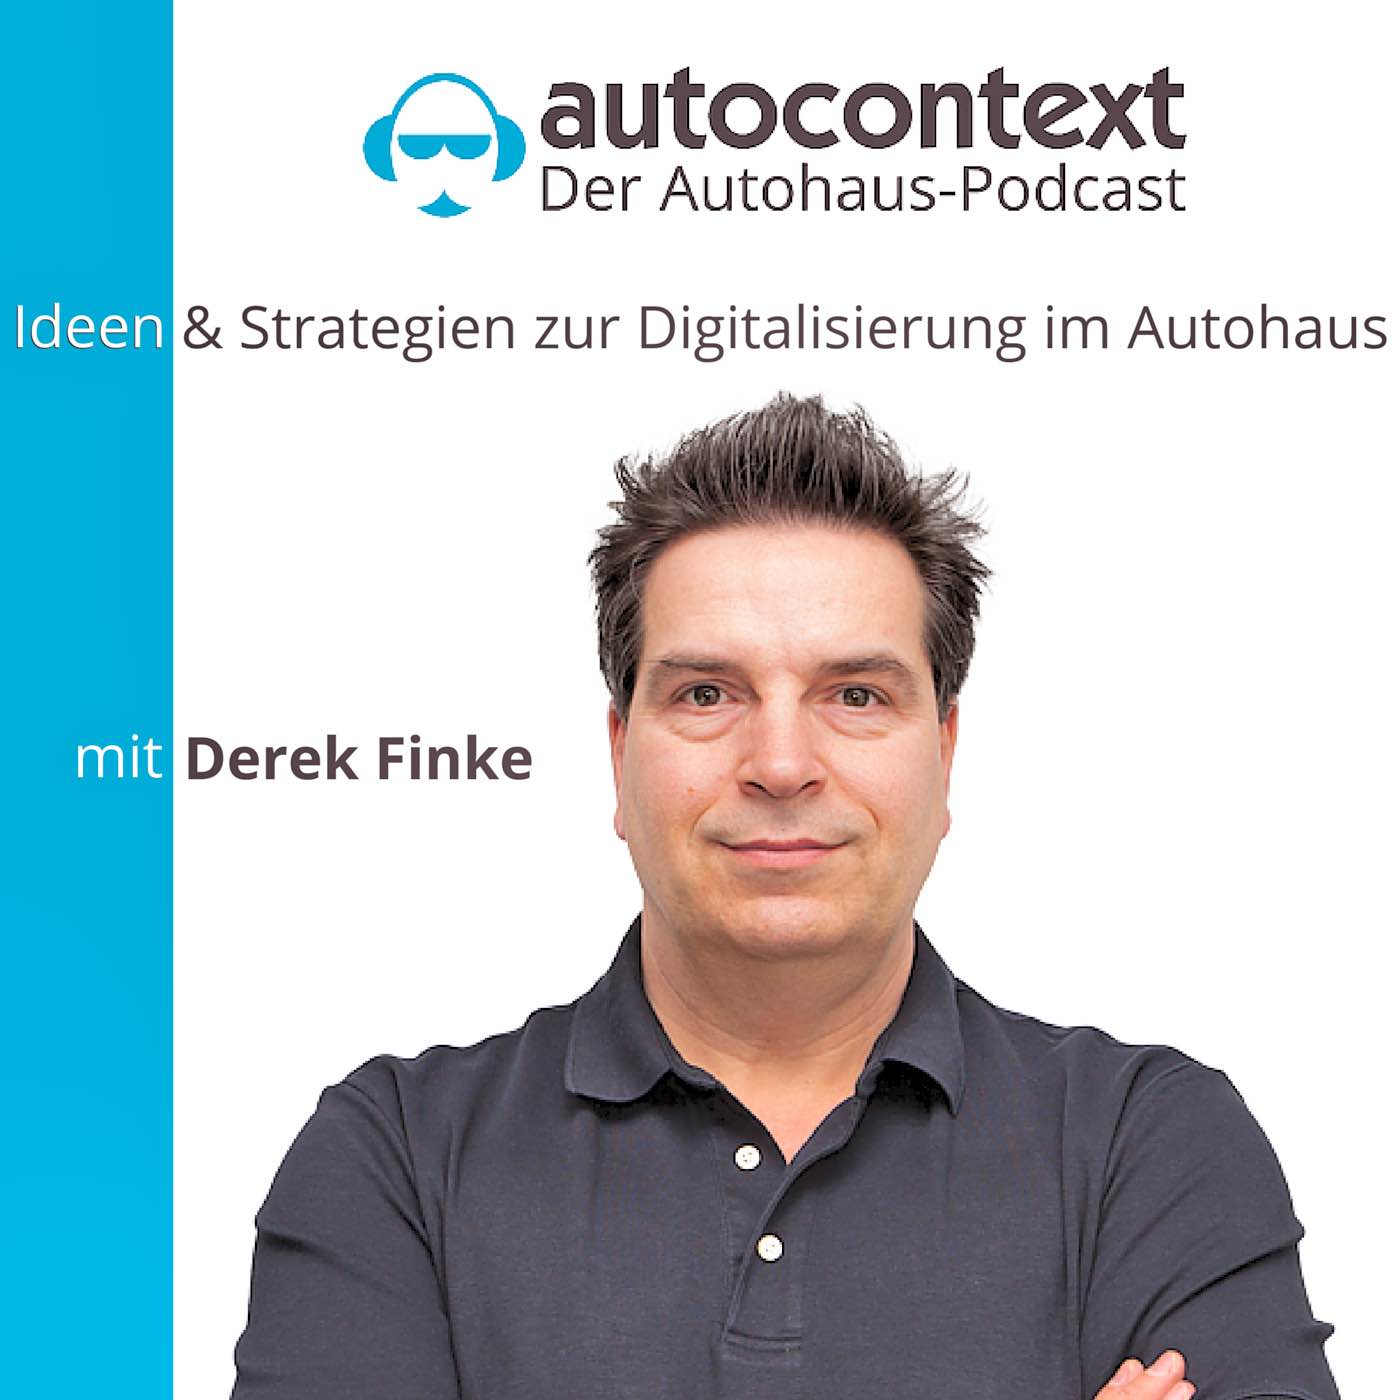 autocontext - Der Autohaus-Podcast (Stand 2015)